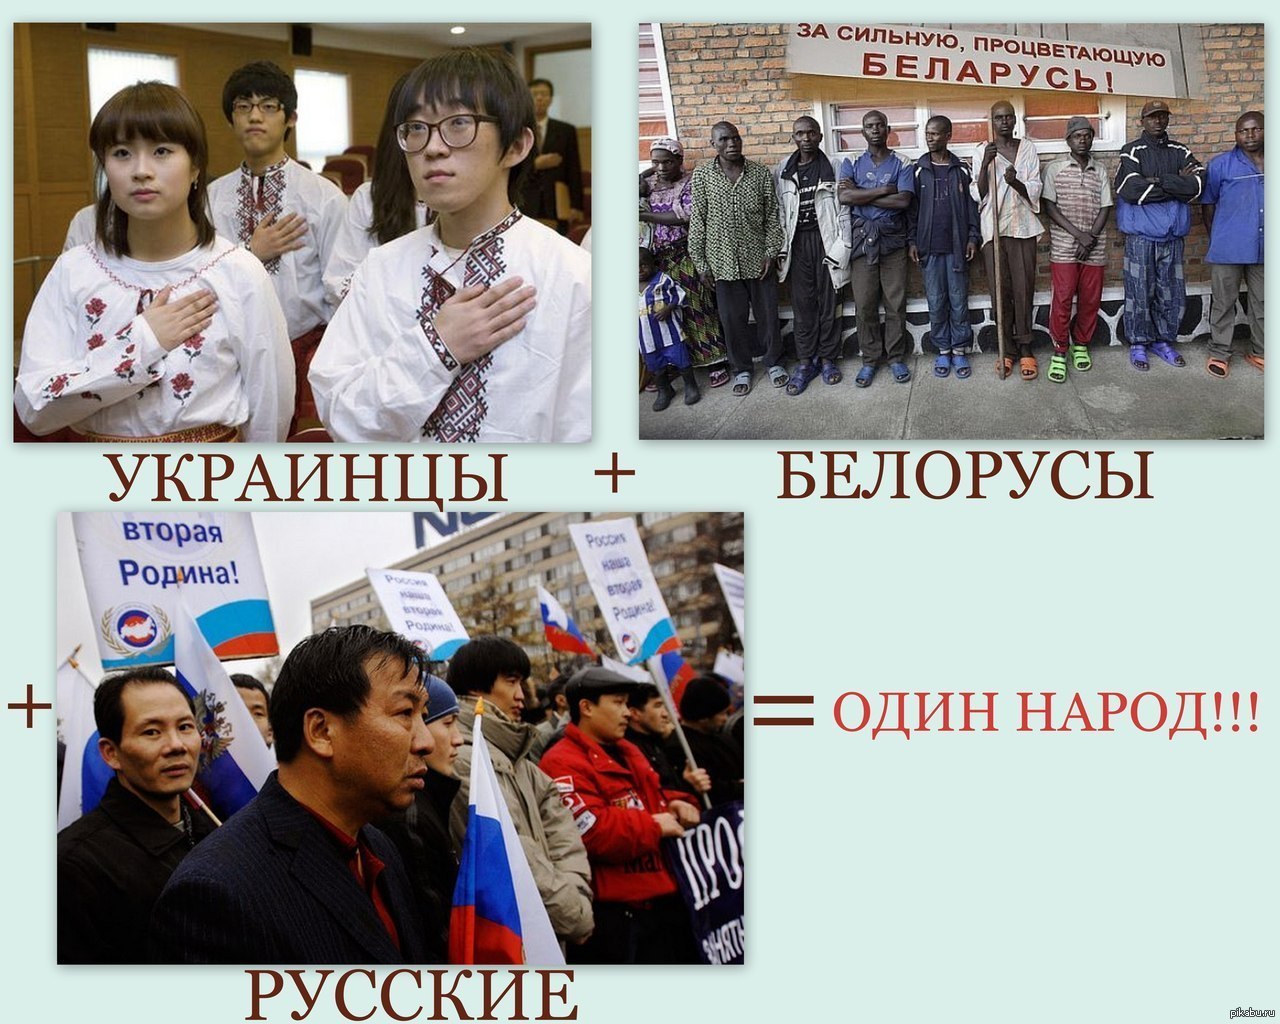 Русские и украинцы братья. Русские и украинцы один народ. Русские украинцы и белорусы один народ. Русские и украинцы единый народ. Украинцы и русские разные народы.